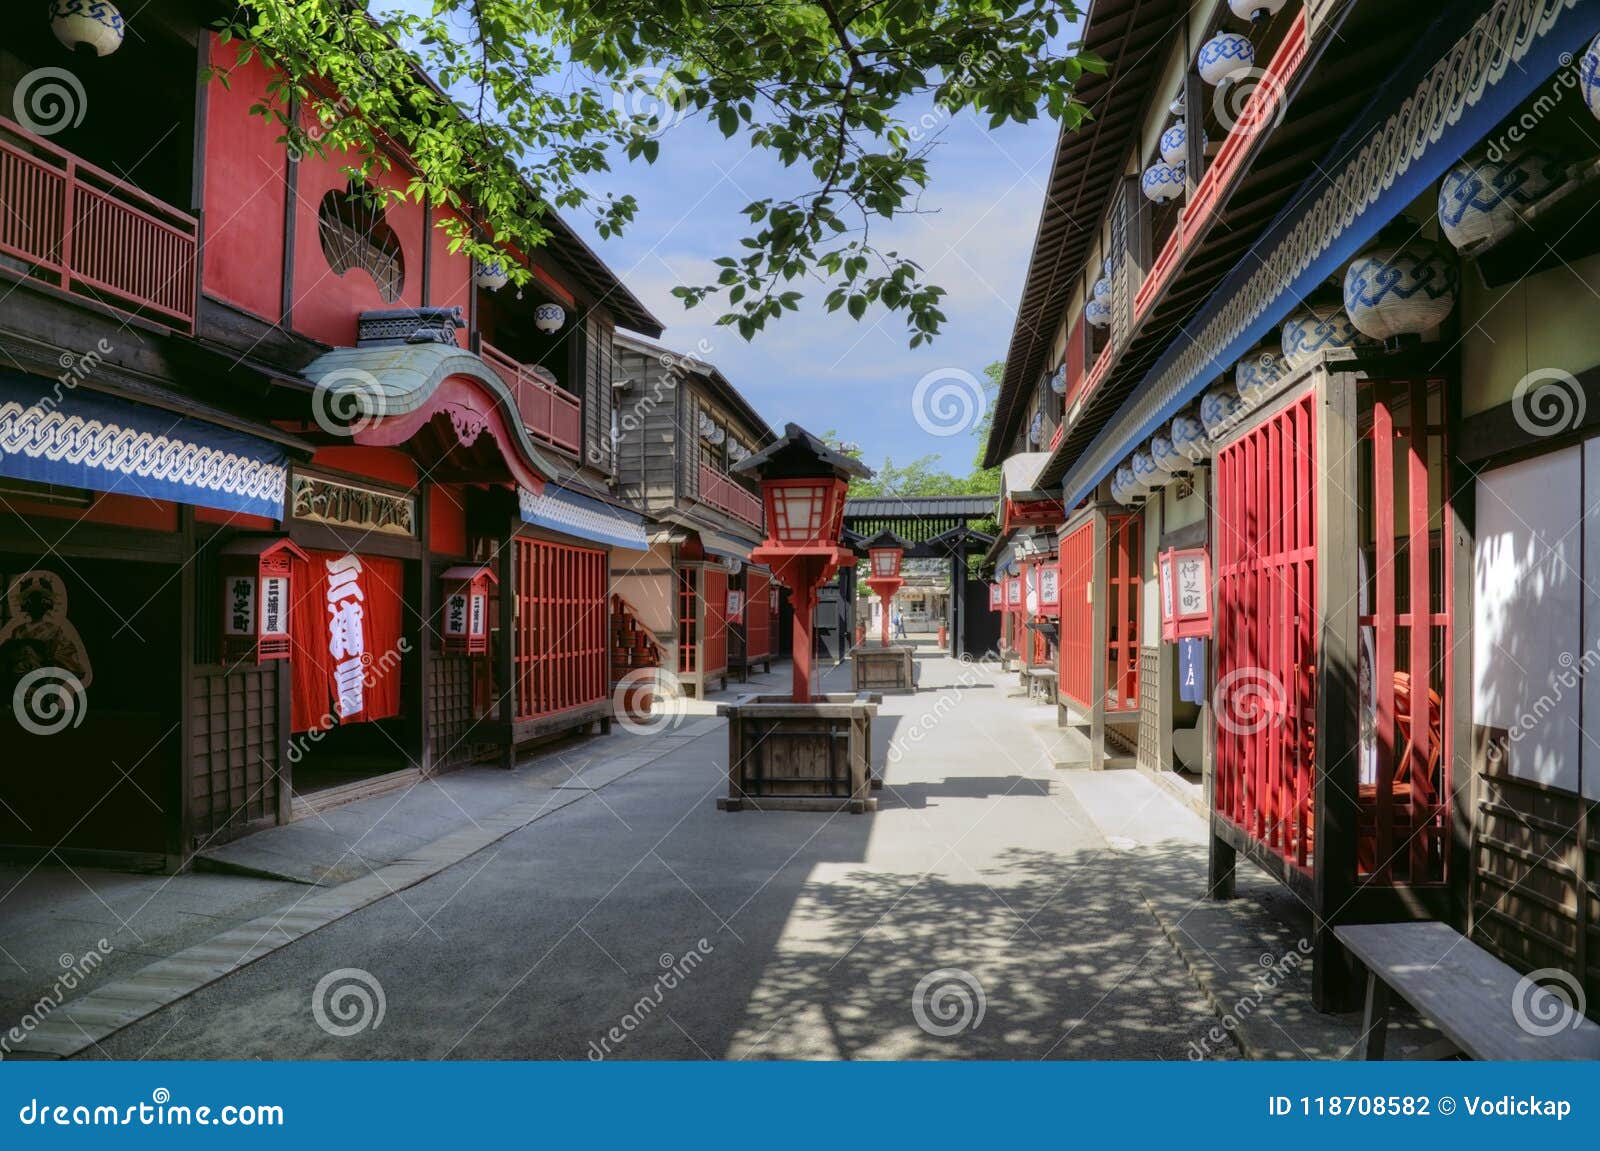 江户时代红灯区吉原街道 日本图库摄影片 图片包括有地区 抽象 历史 壮丽的场面 黑暗 重建